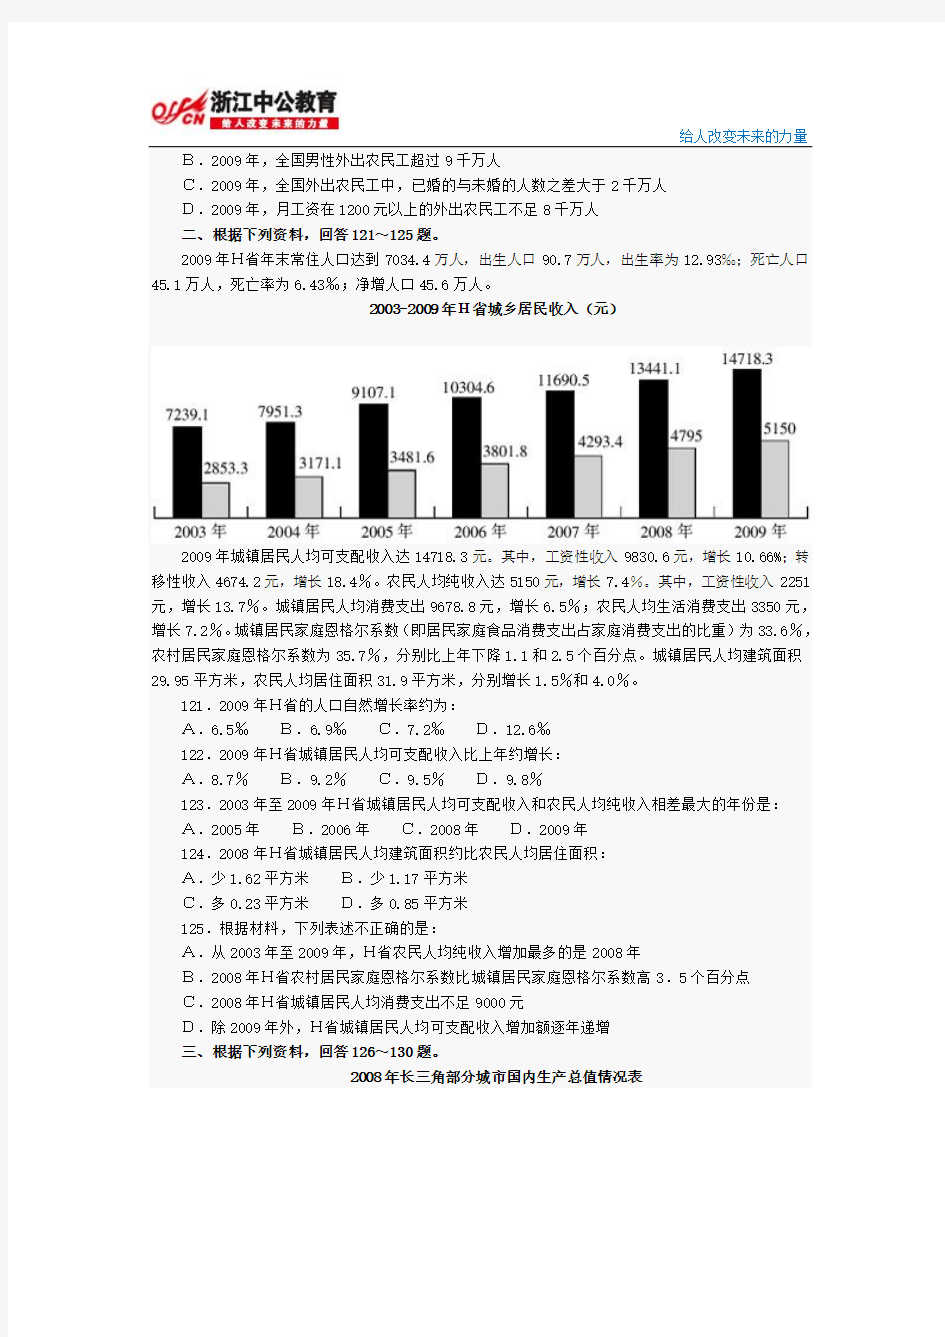 2011年浙江省公务员考试《行测》真题及答案-资料分析